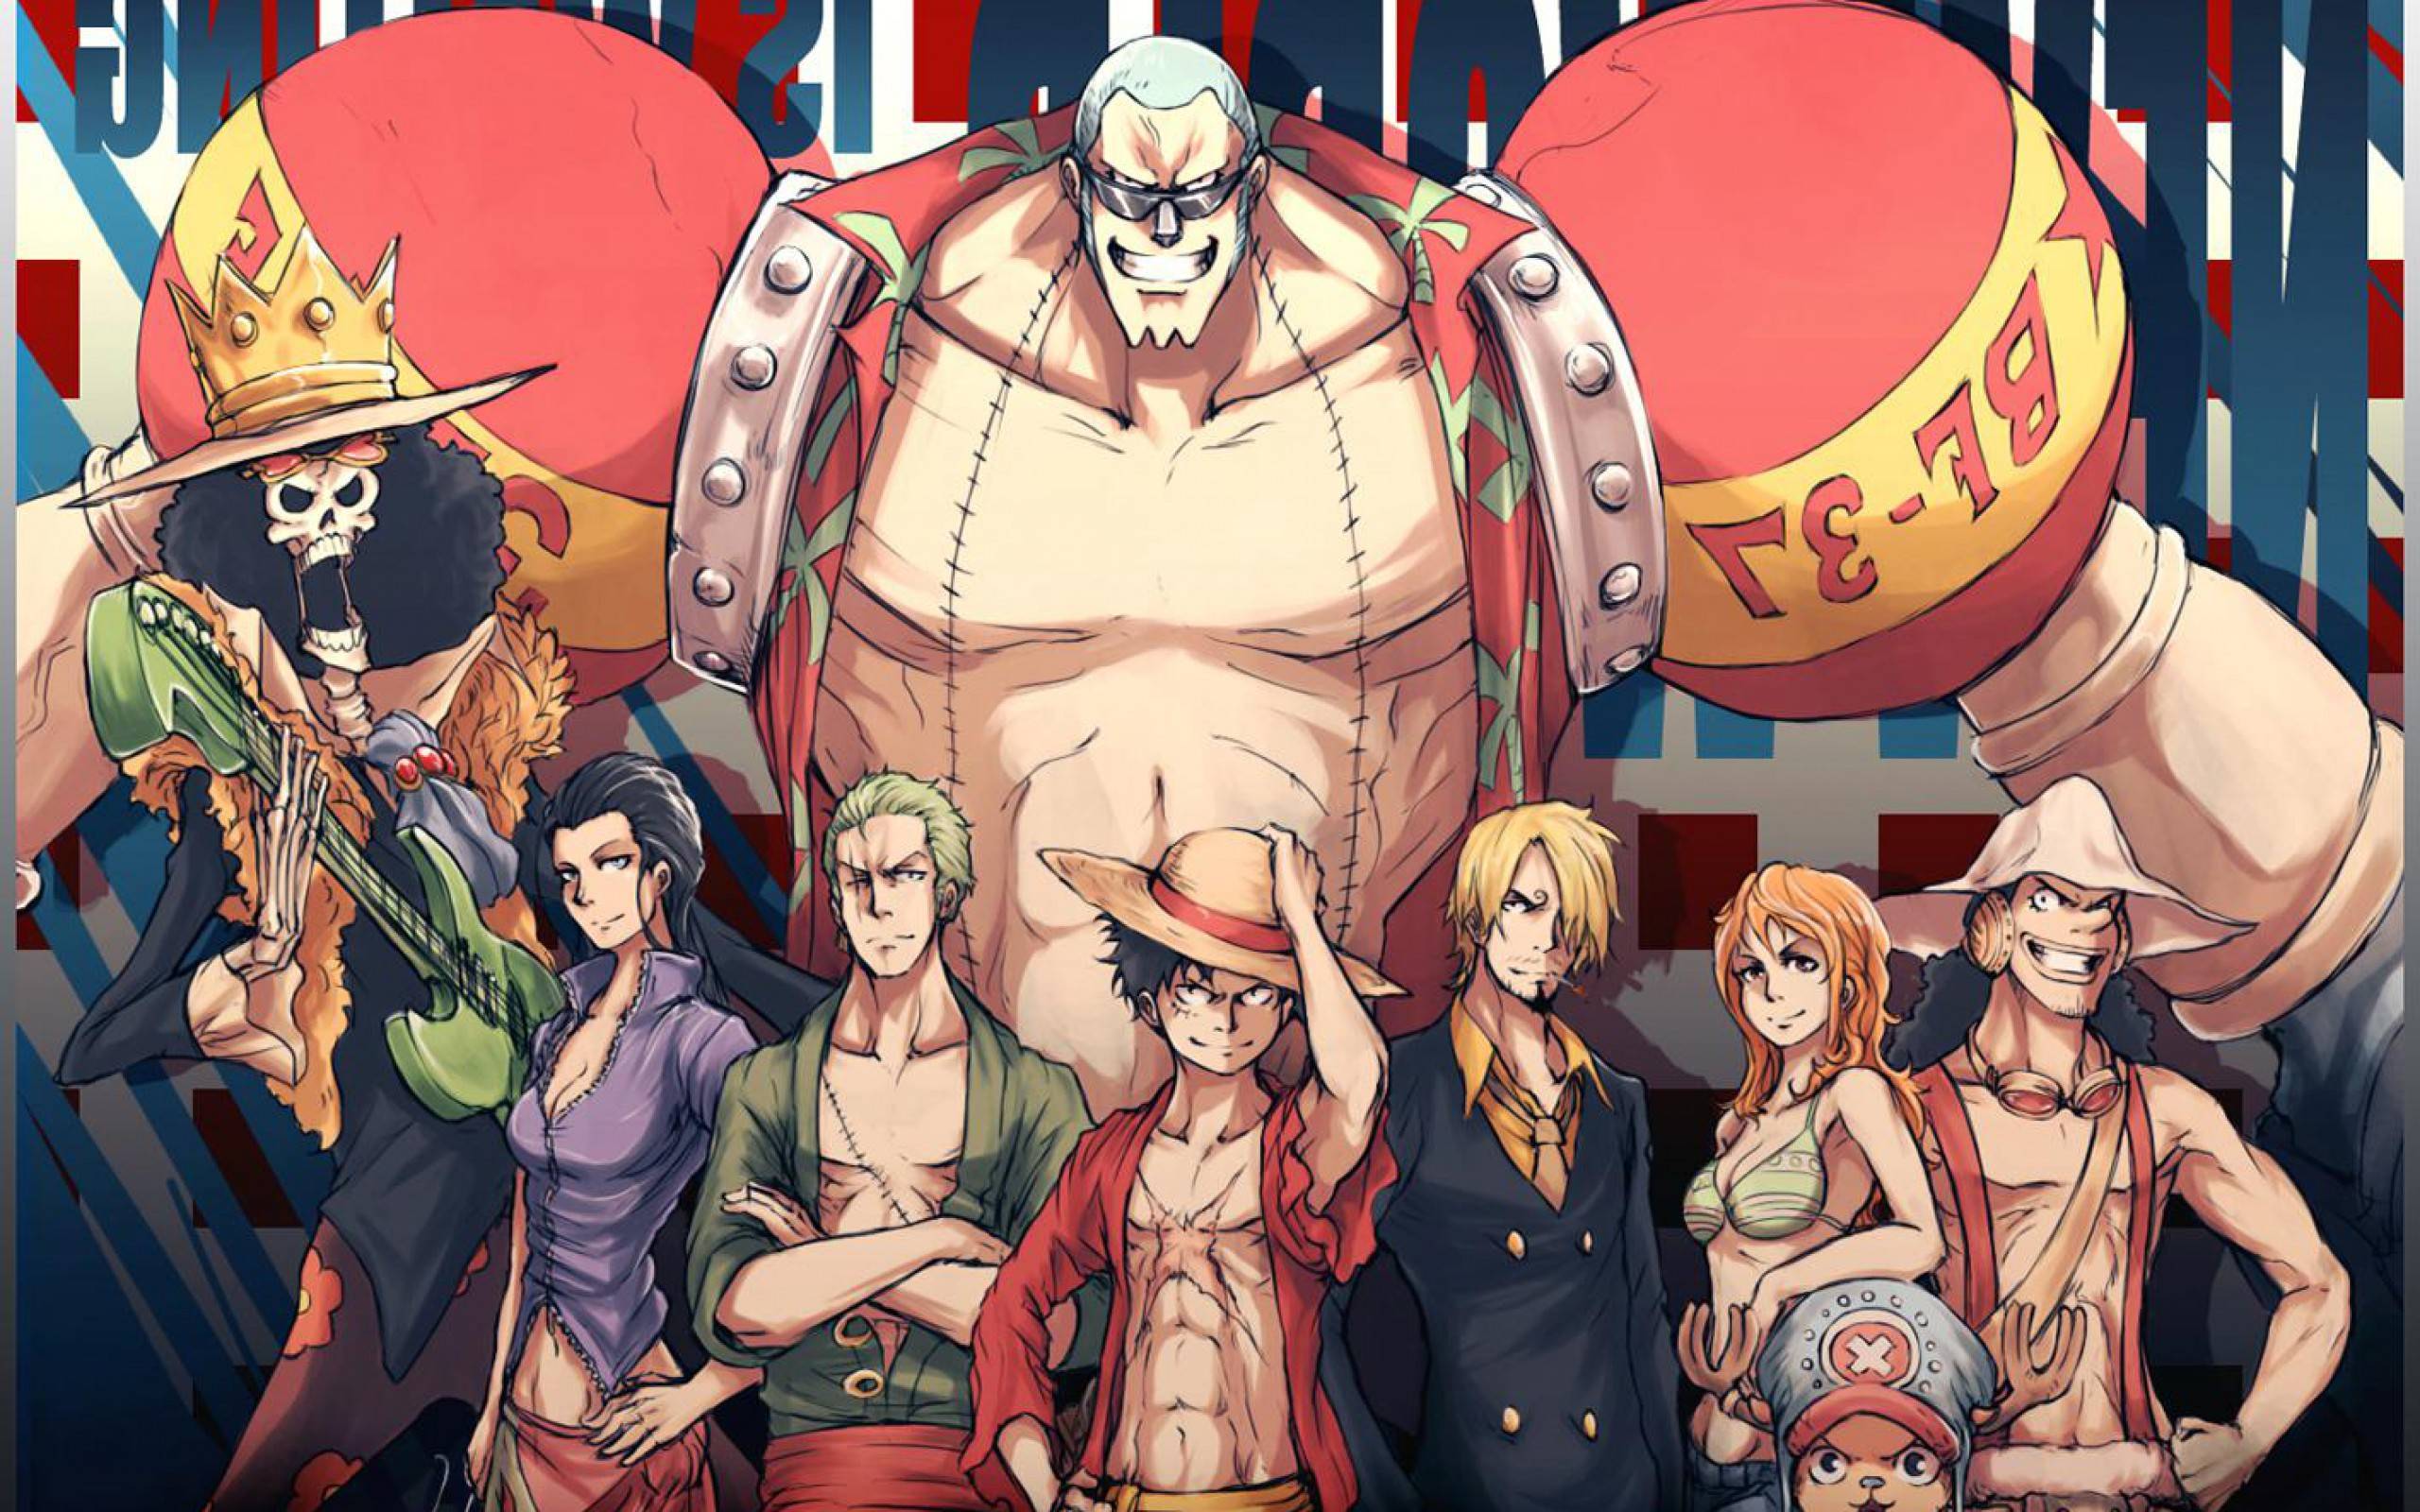 Steam Workshop::One Piece Wallpaper Collection